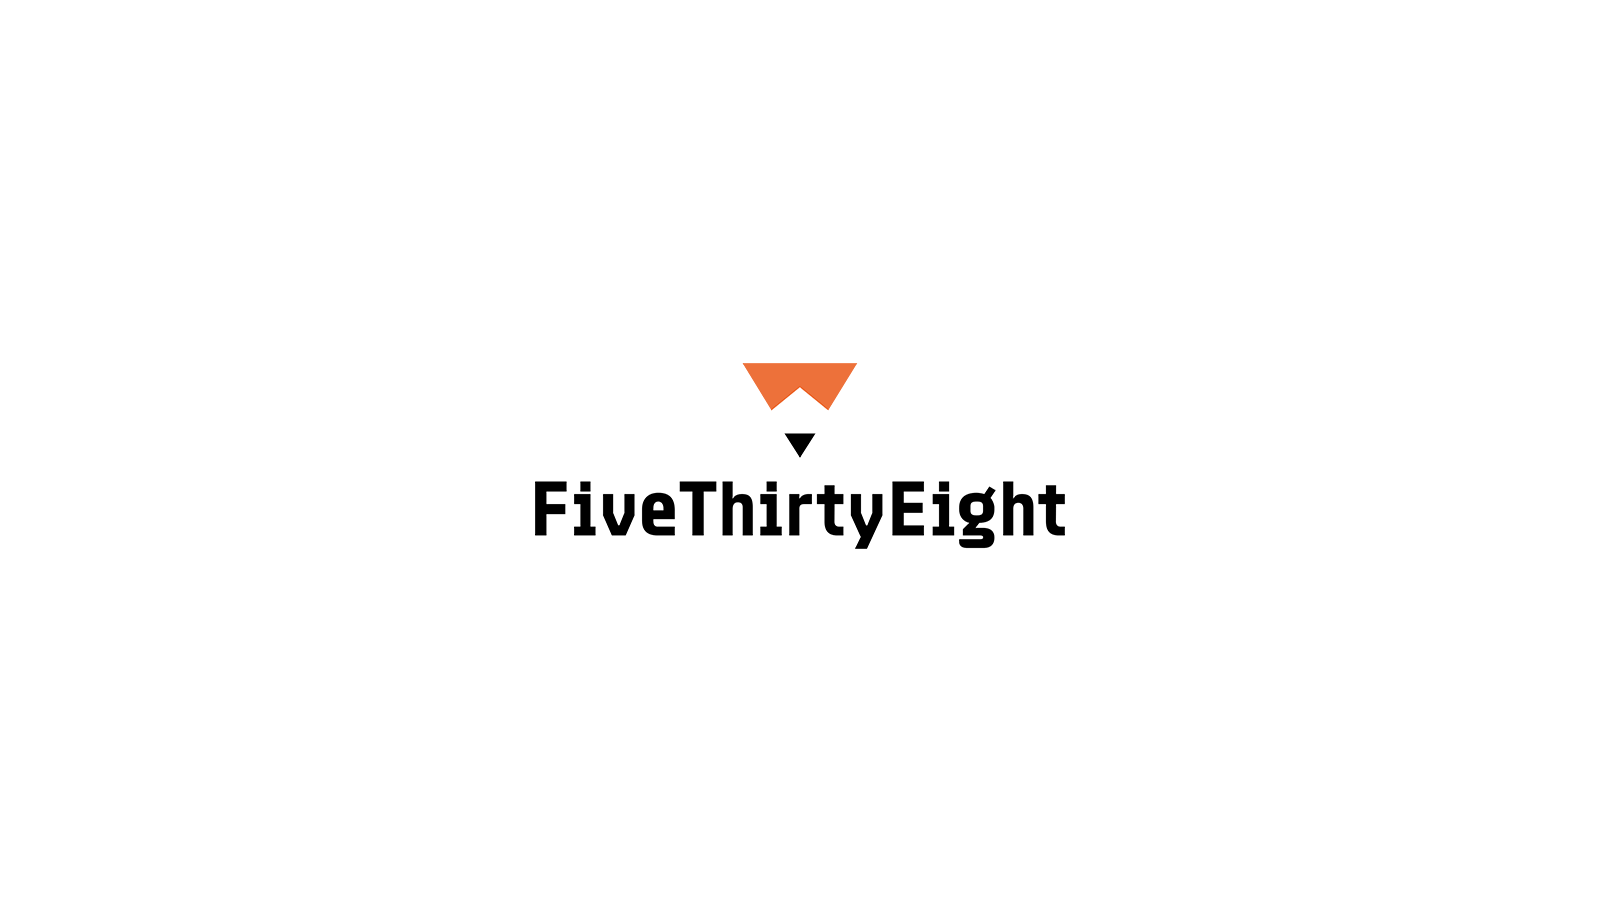 fivethirtyeight.com